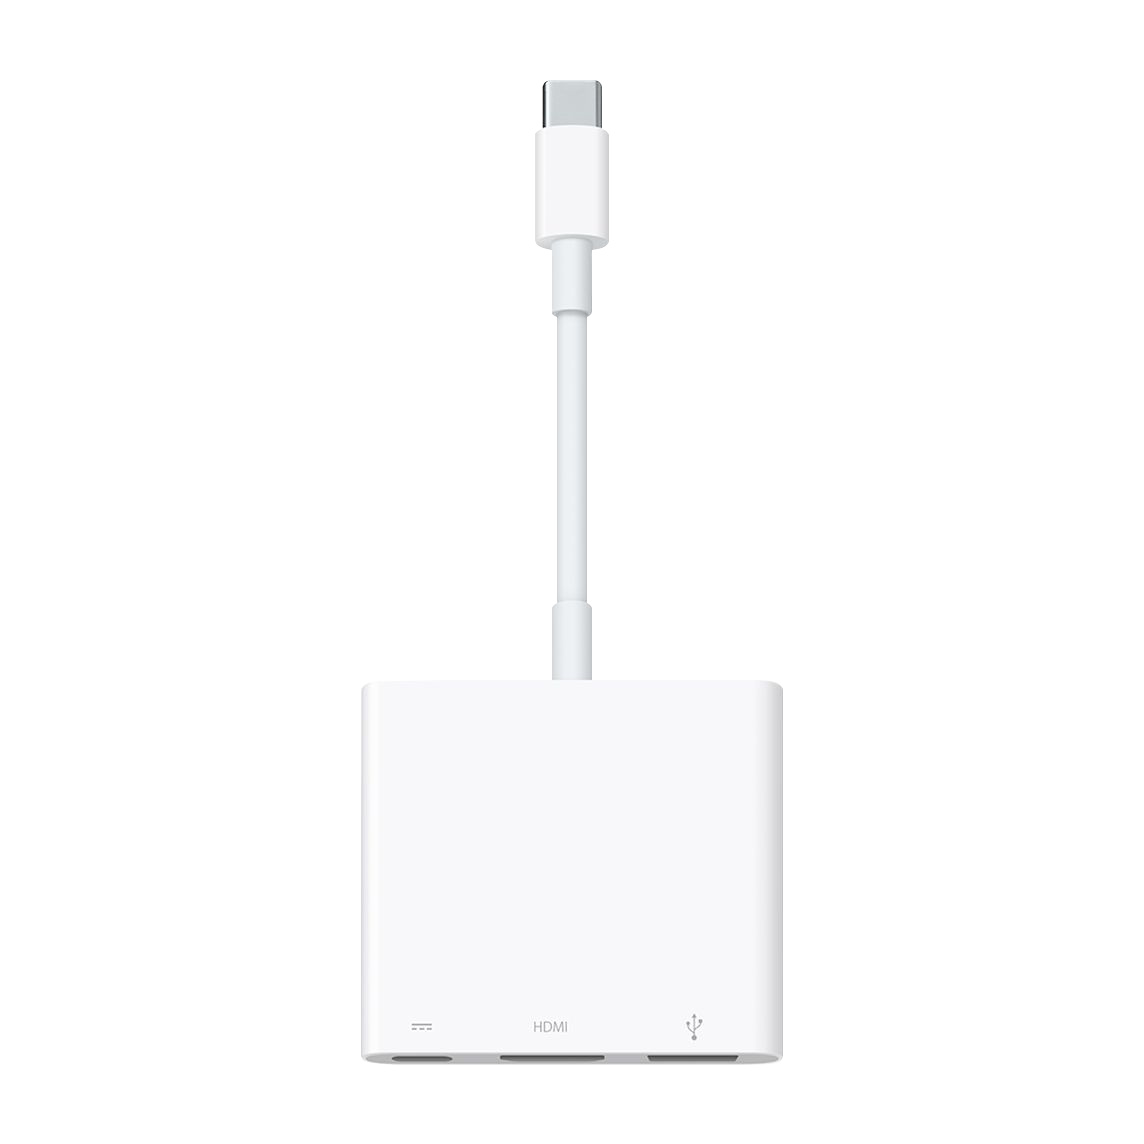 USB-C 數位 AV 多埠轉接器可讓你將配備 USB-C 的 Mac 或 iPad 連接至 HDMI 顯示器，還能同時連接一個標準的 USB 裝置與一條 USB-C 充電連接線